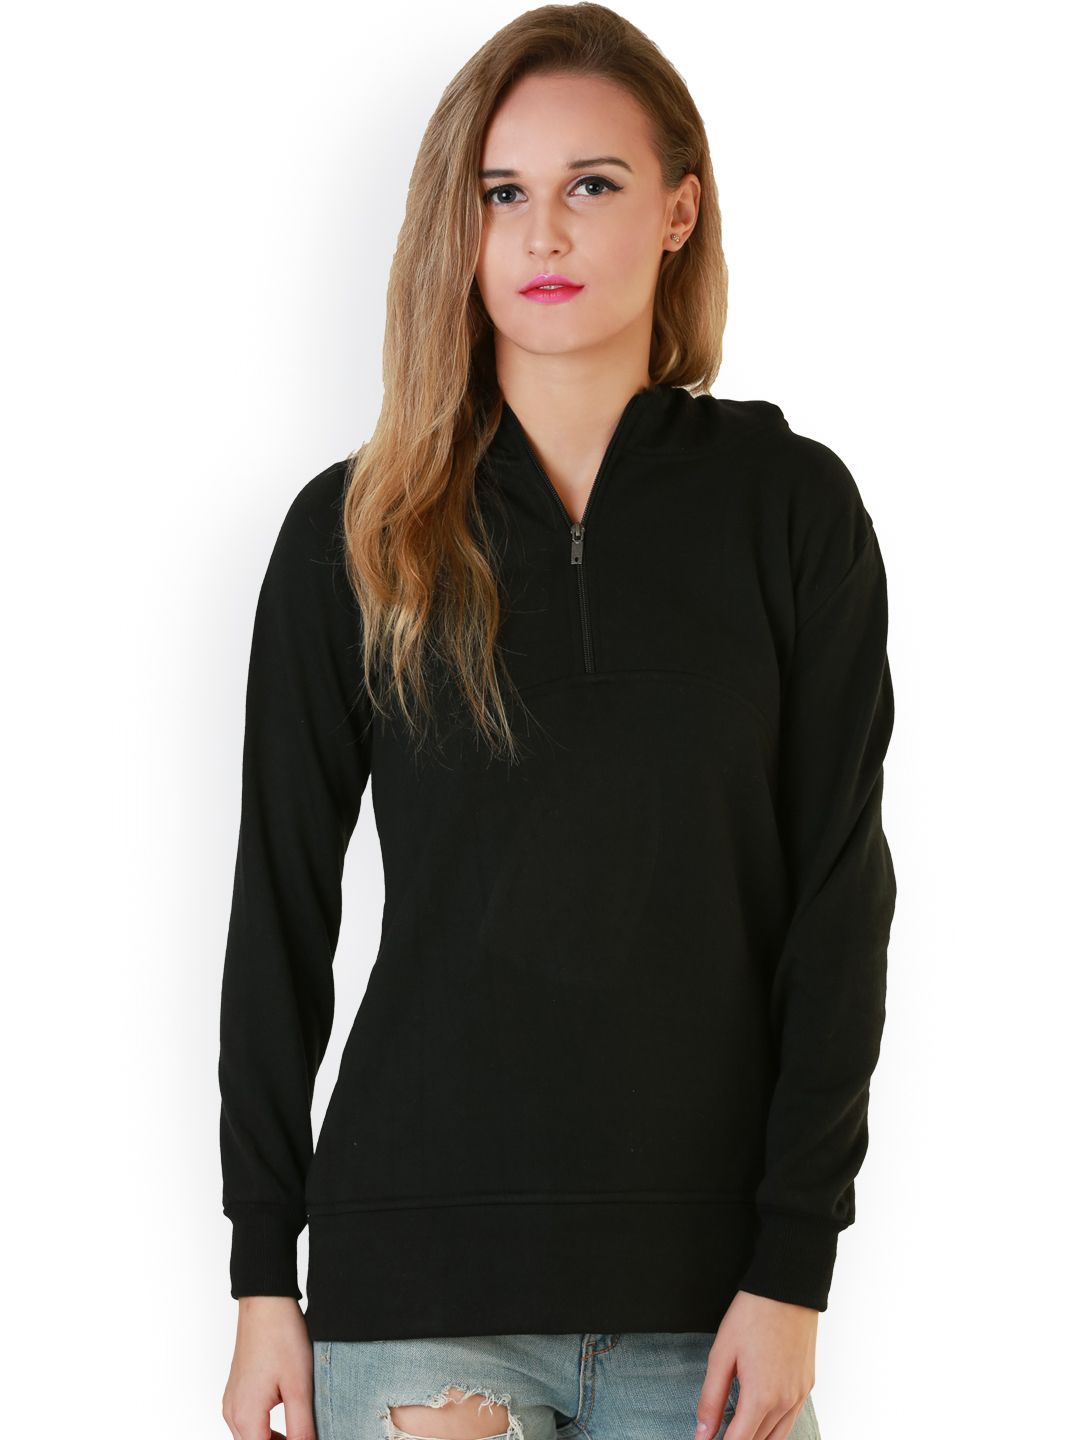 Belle Fille Black Hooded Sweatshirt Price in India